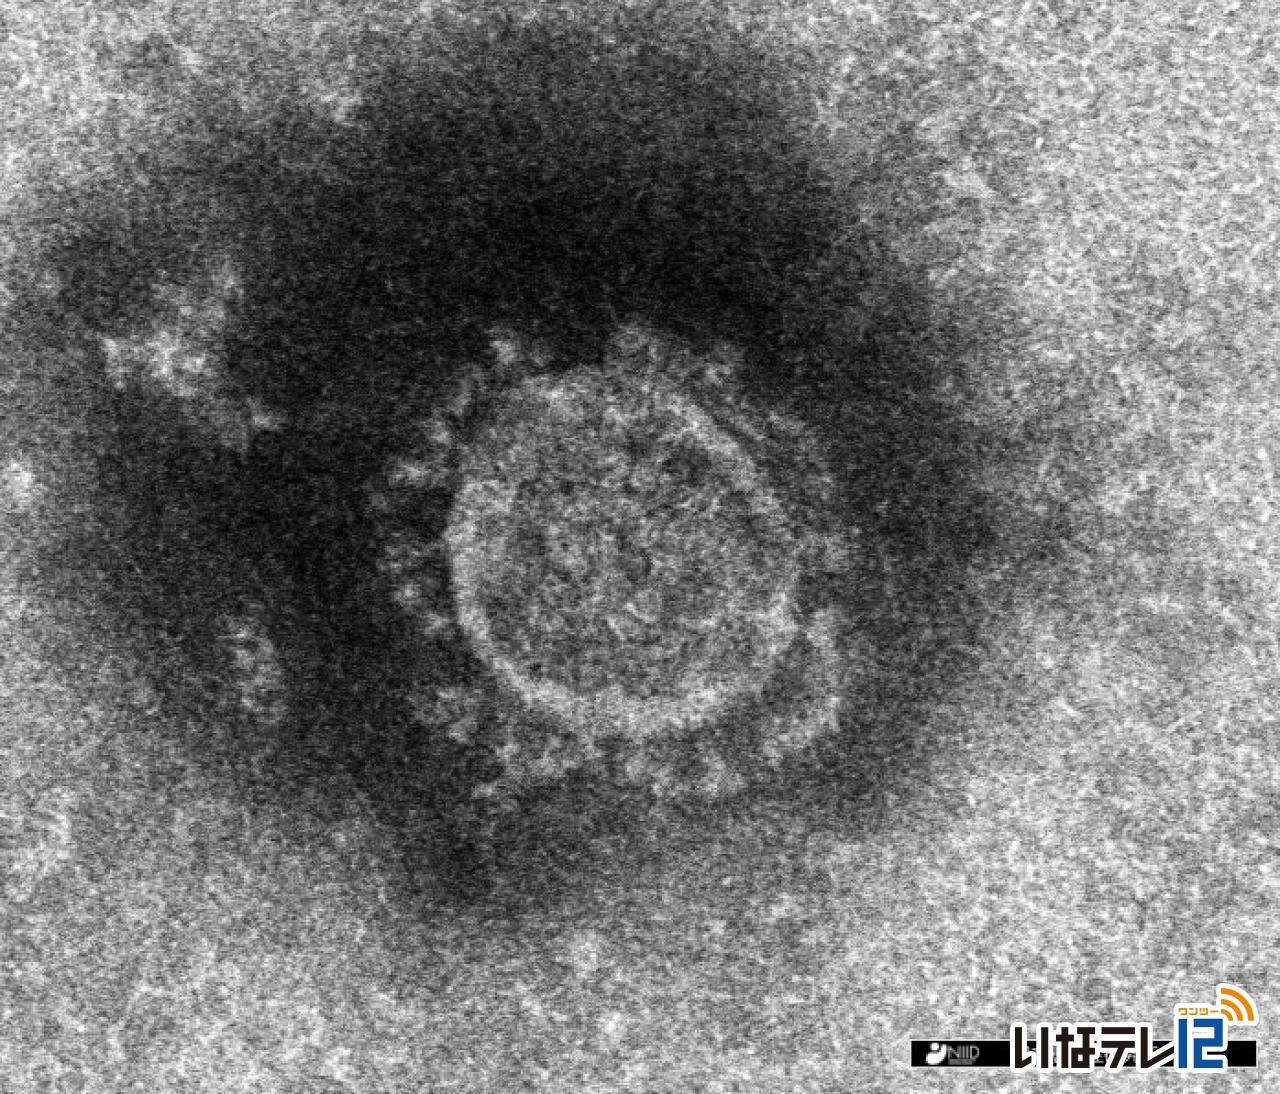 長野県内で新たに上伊那２人含む８８人の新型コロナウイルス感染確認